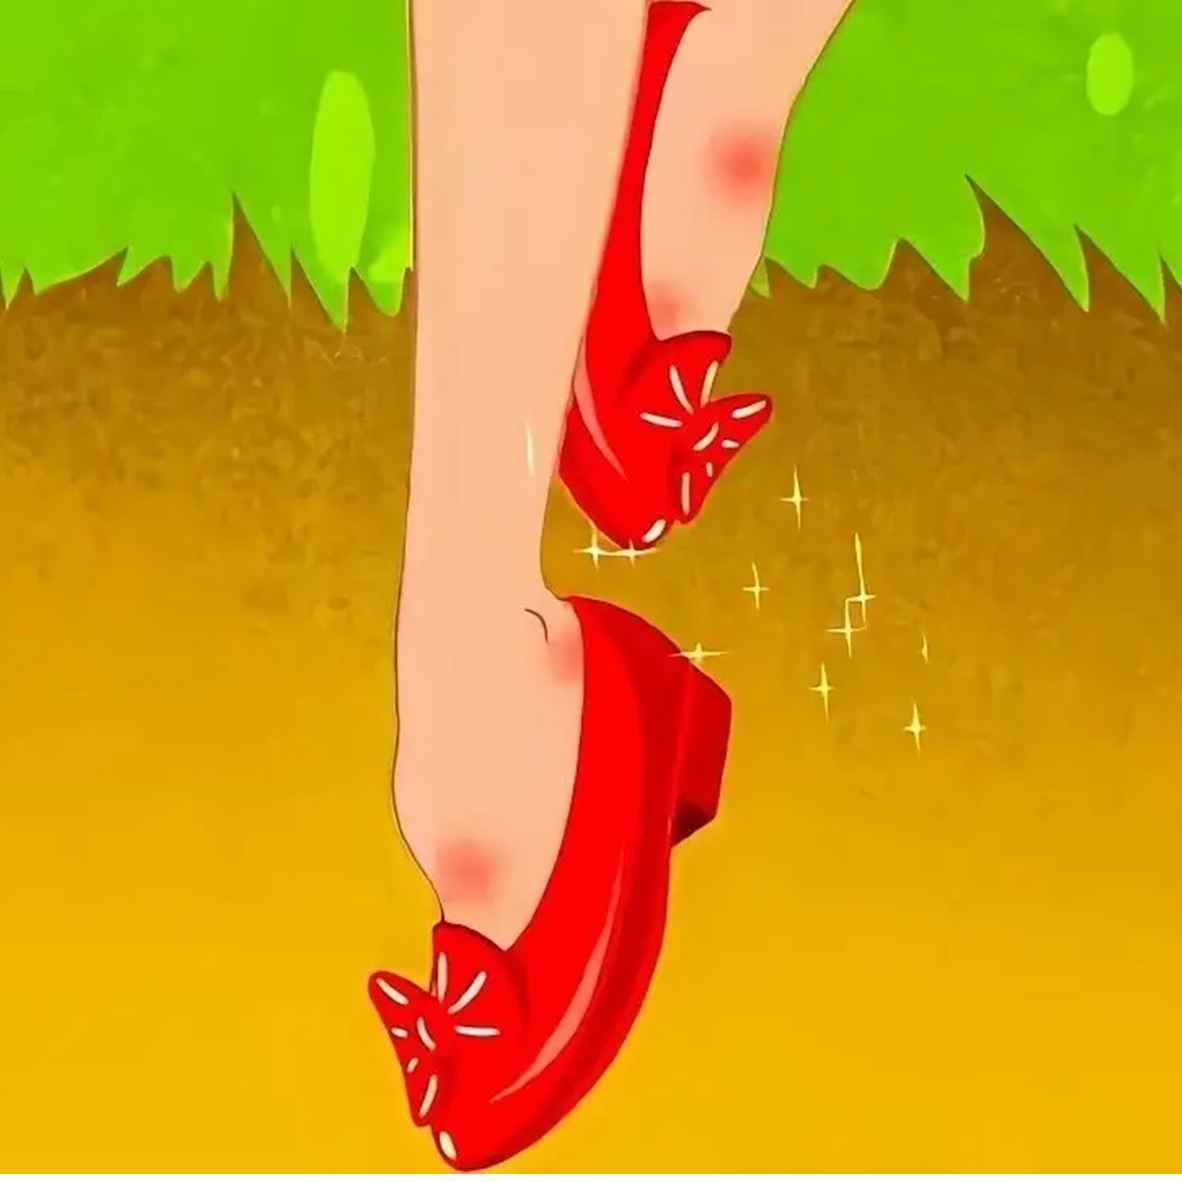 Ringkasan Cerita The Red Shoes, Lengkap Amanat Cerita